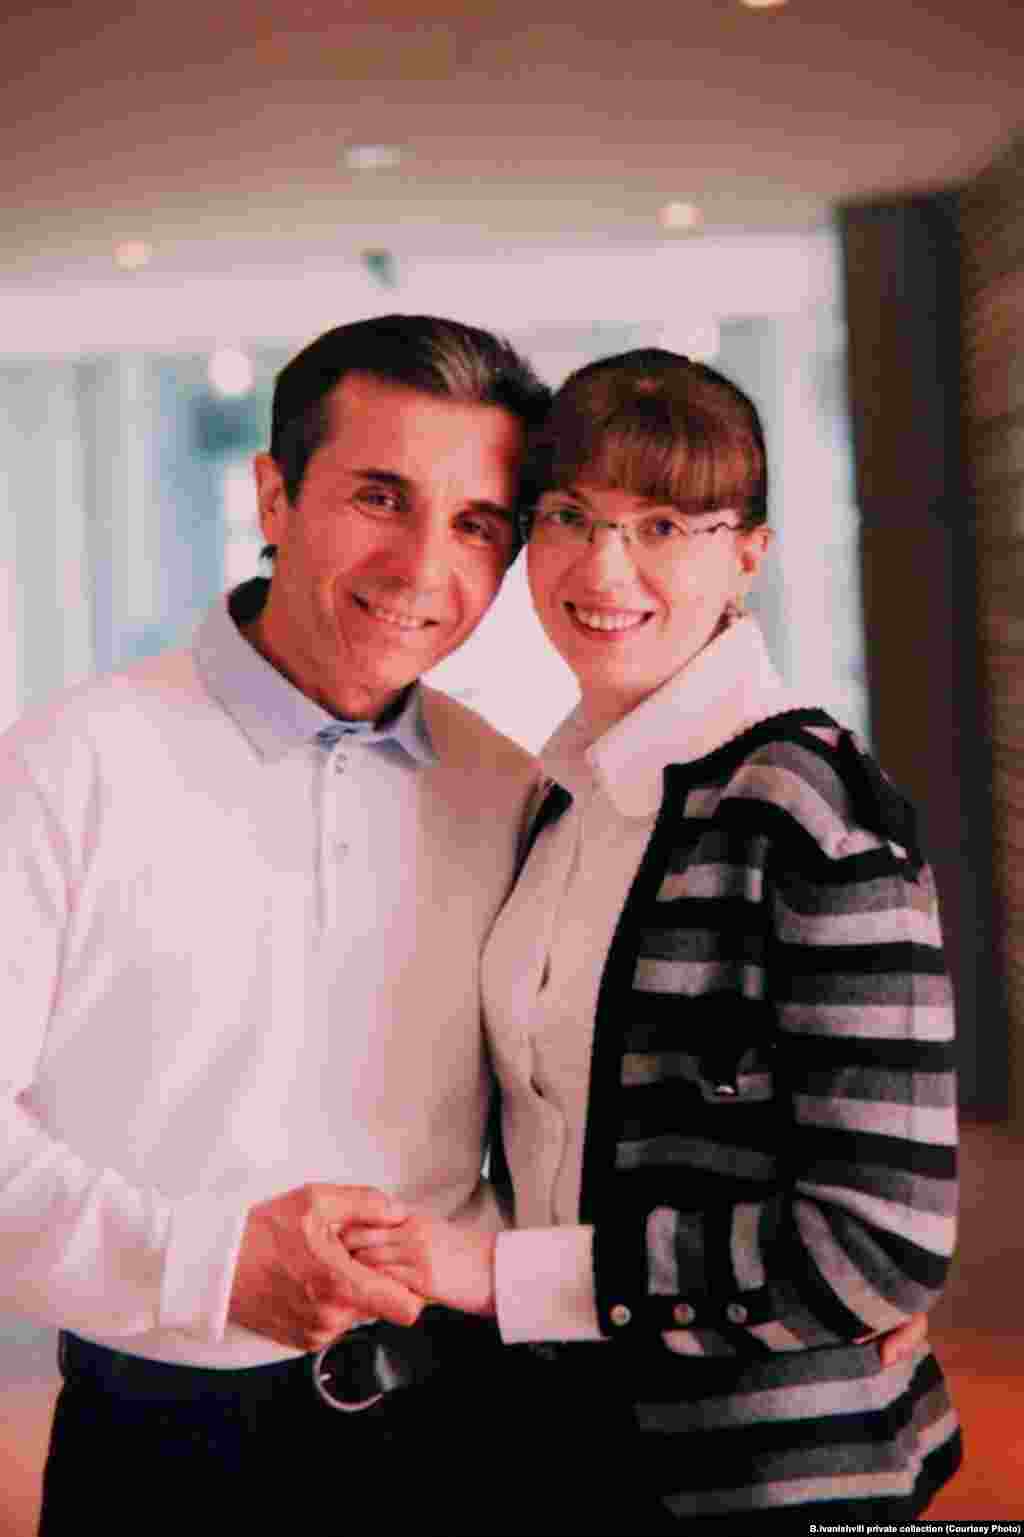 Ivanishvili and his wife, Eka Khvedelidze, in an undated photo.